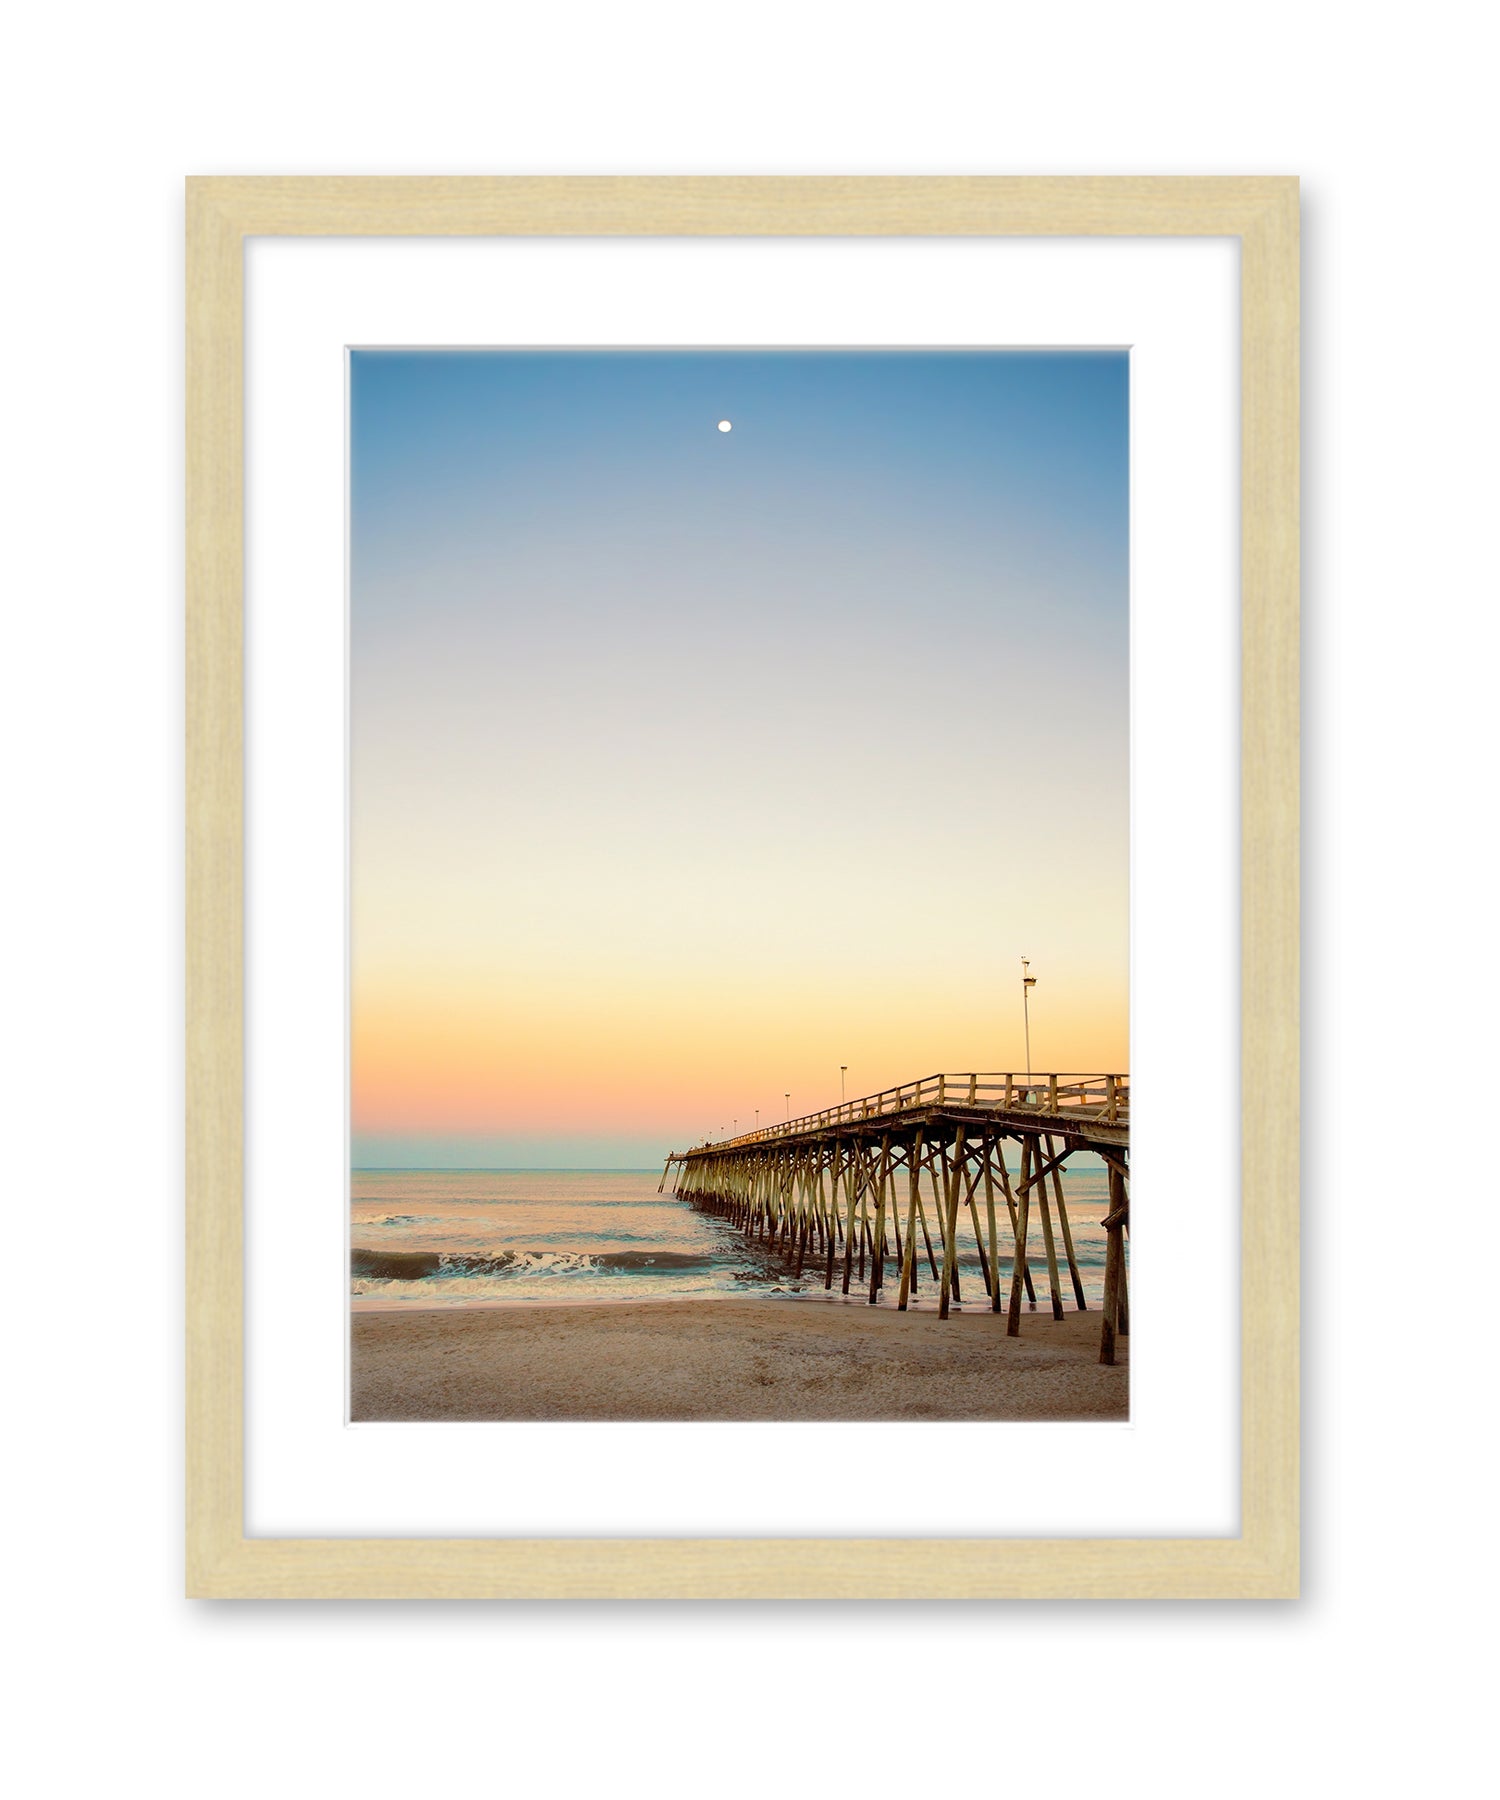 Kure Beach Pier, Warm Beach Sunset, Wright and Roam, Light Wood Frame